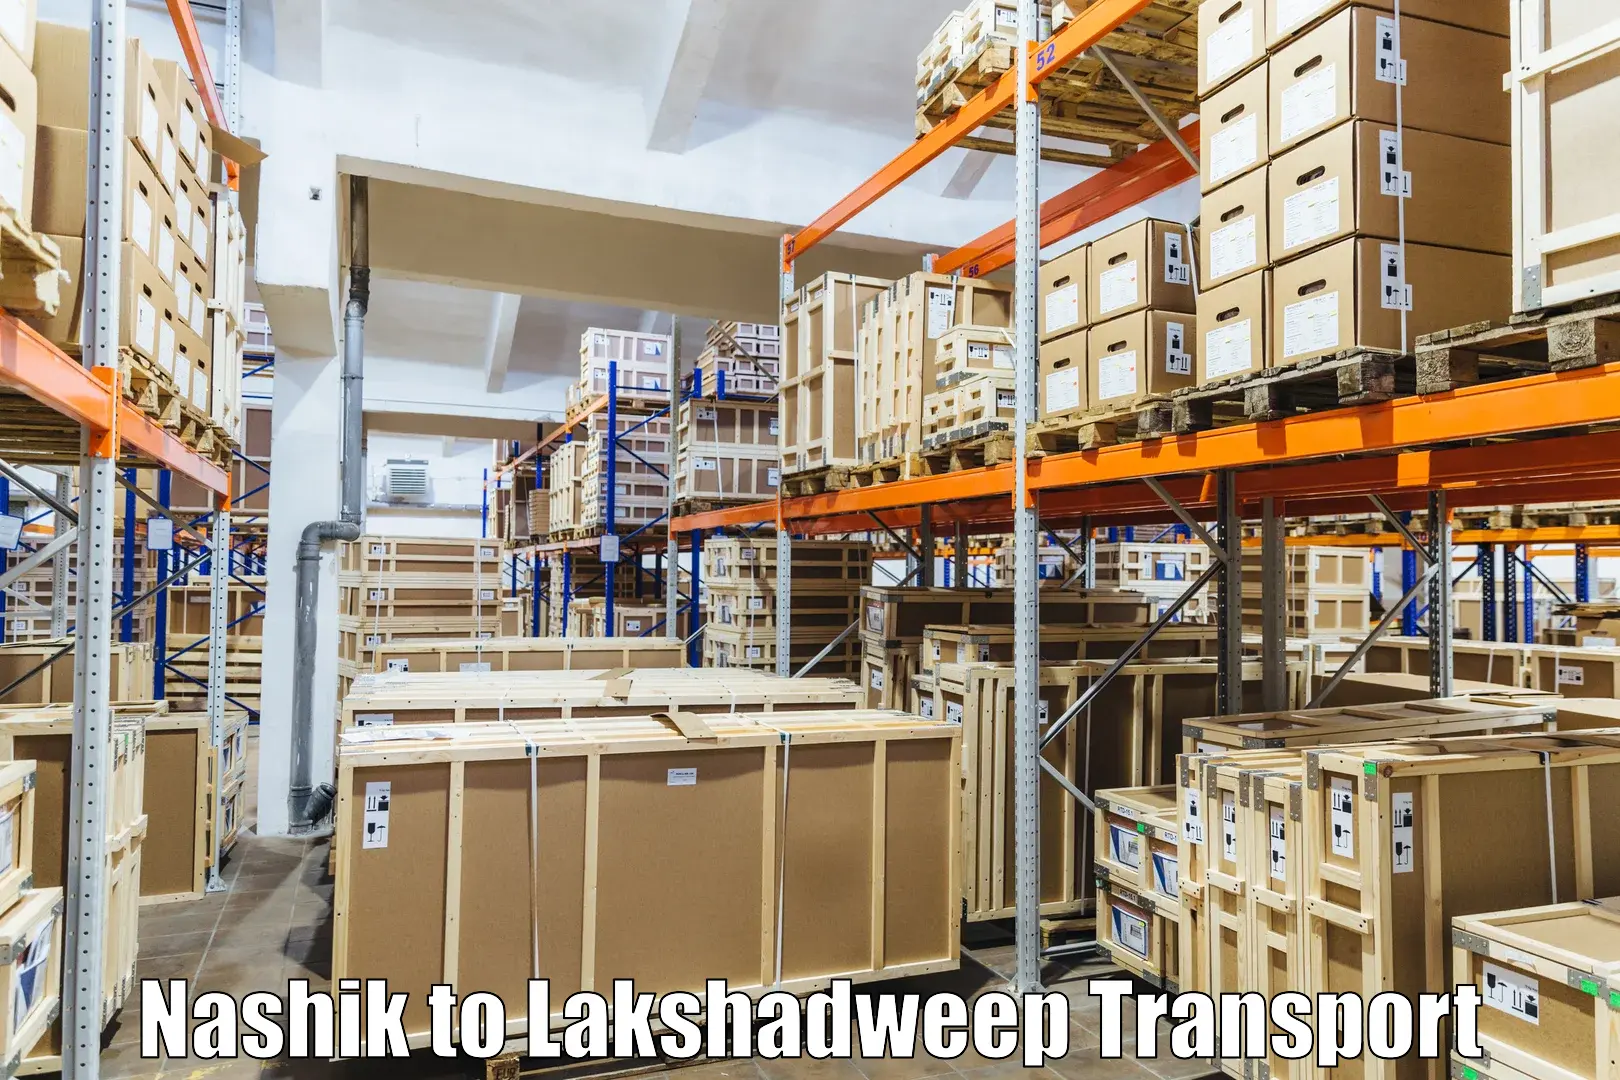 Lorry transport service Nashik to Lakshadweep